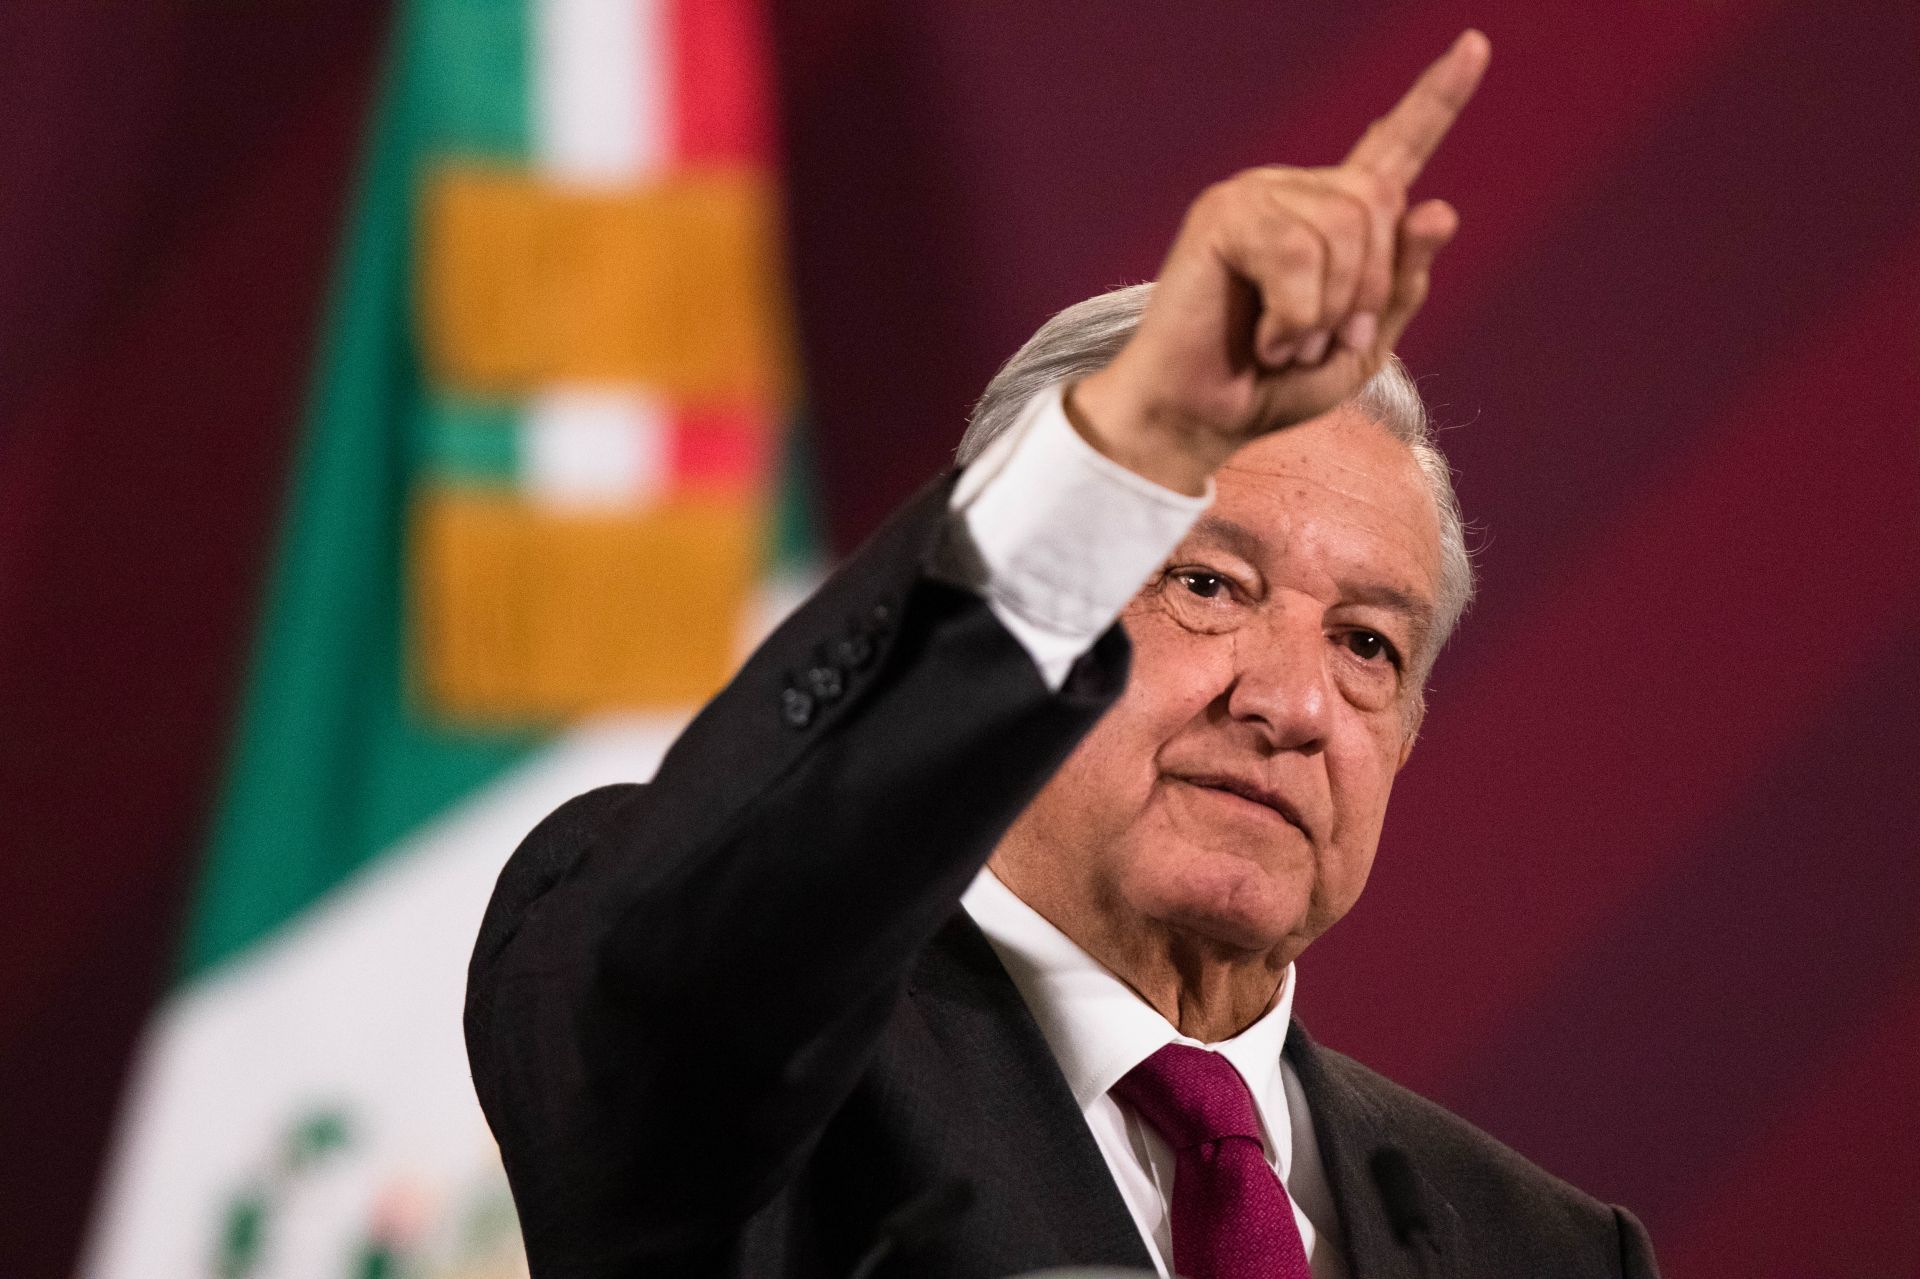 El presidente Andrés Manuel López Obrador señaló que México se pronuncia en favor de la paz, luego de que la Embajada de Israel en el país lamentara que no se tenga una postura más enérgica sobre el conflicto bélico que sostienen Israel y Hamas.